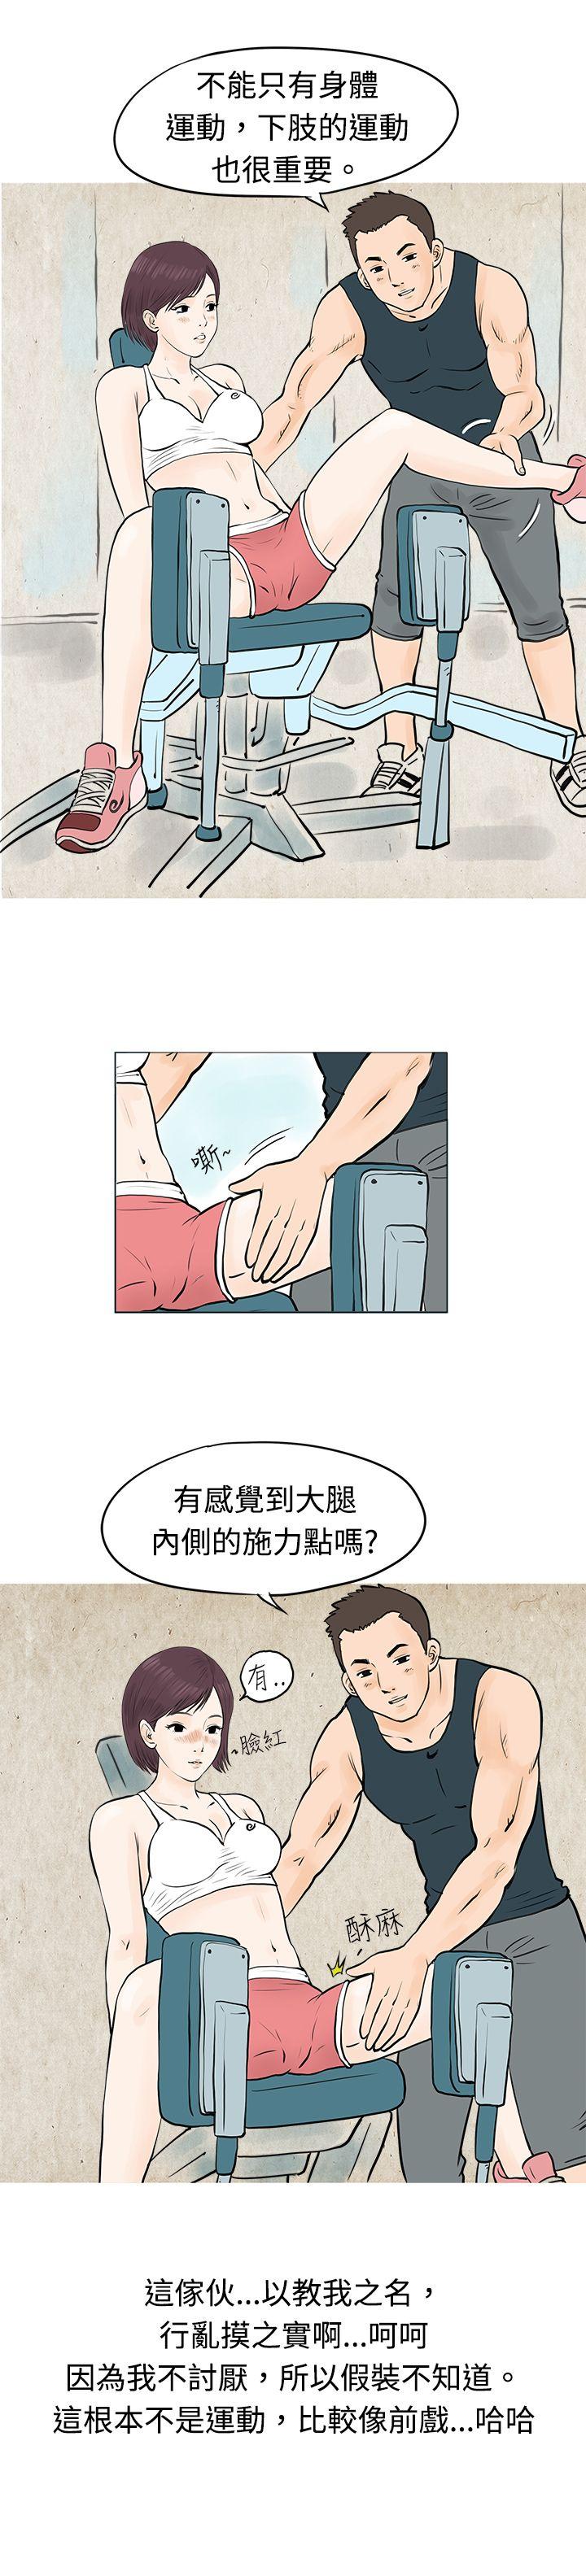 韩国污漫画 秘密Story 到健身房解决需求(下) 3